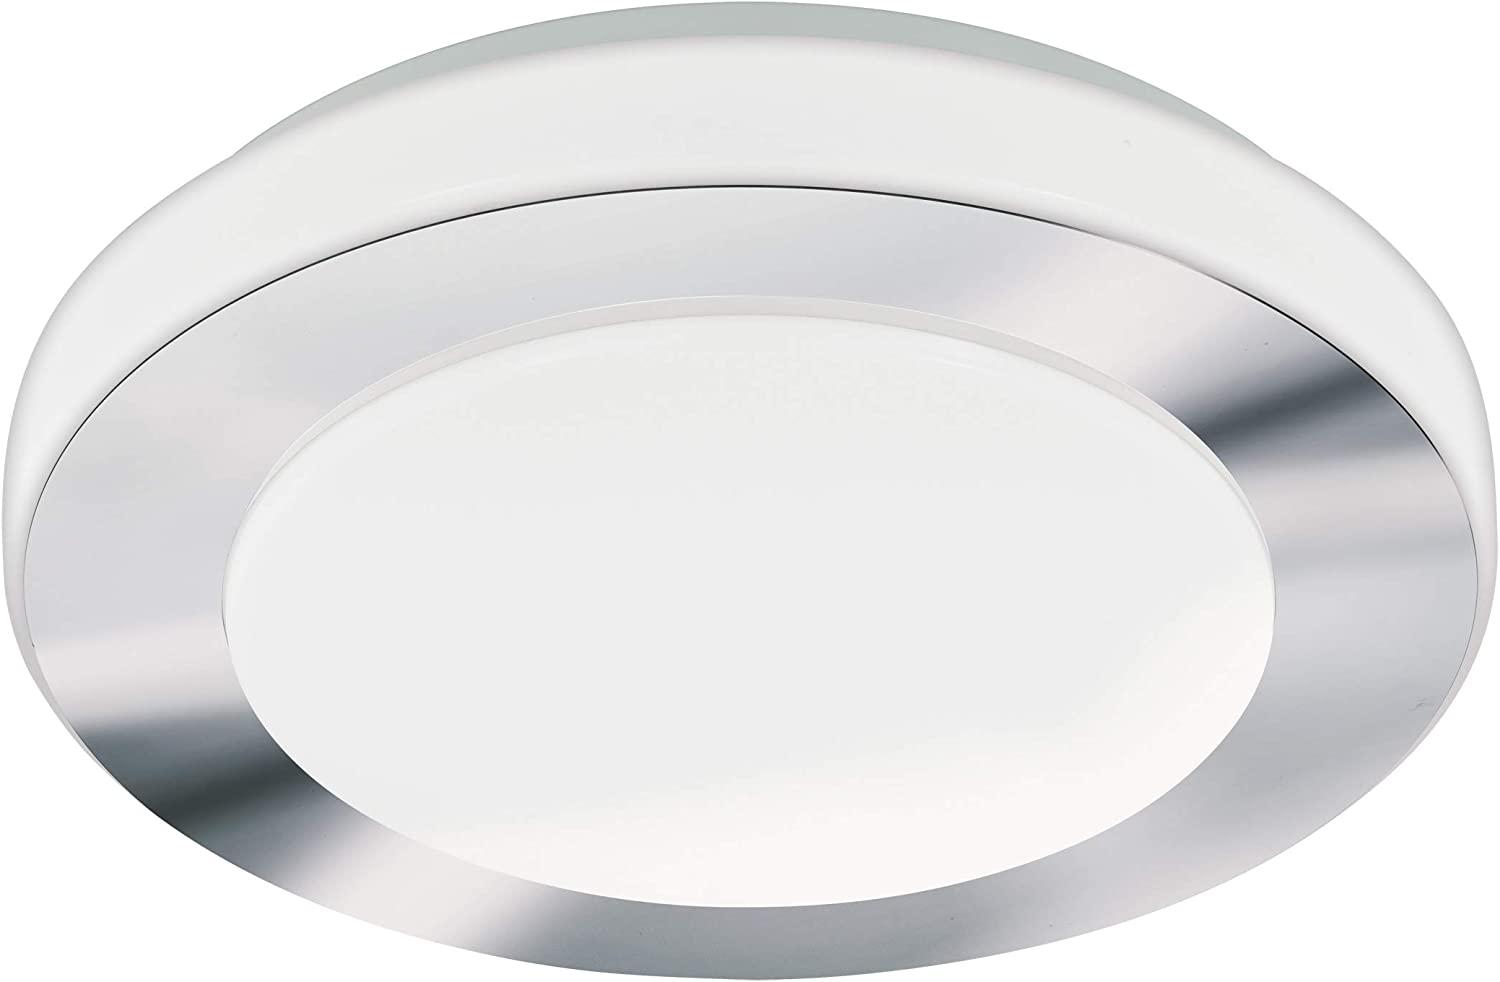 Eglo 95282 Badezimmerleuchte LED Carpi in chrom und weiß 3x3,6W Ø30cm IP44 Bild 1